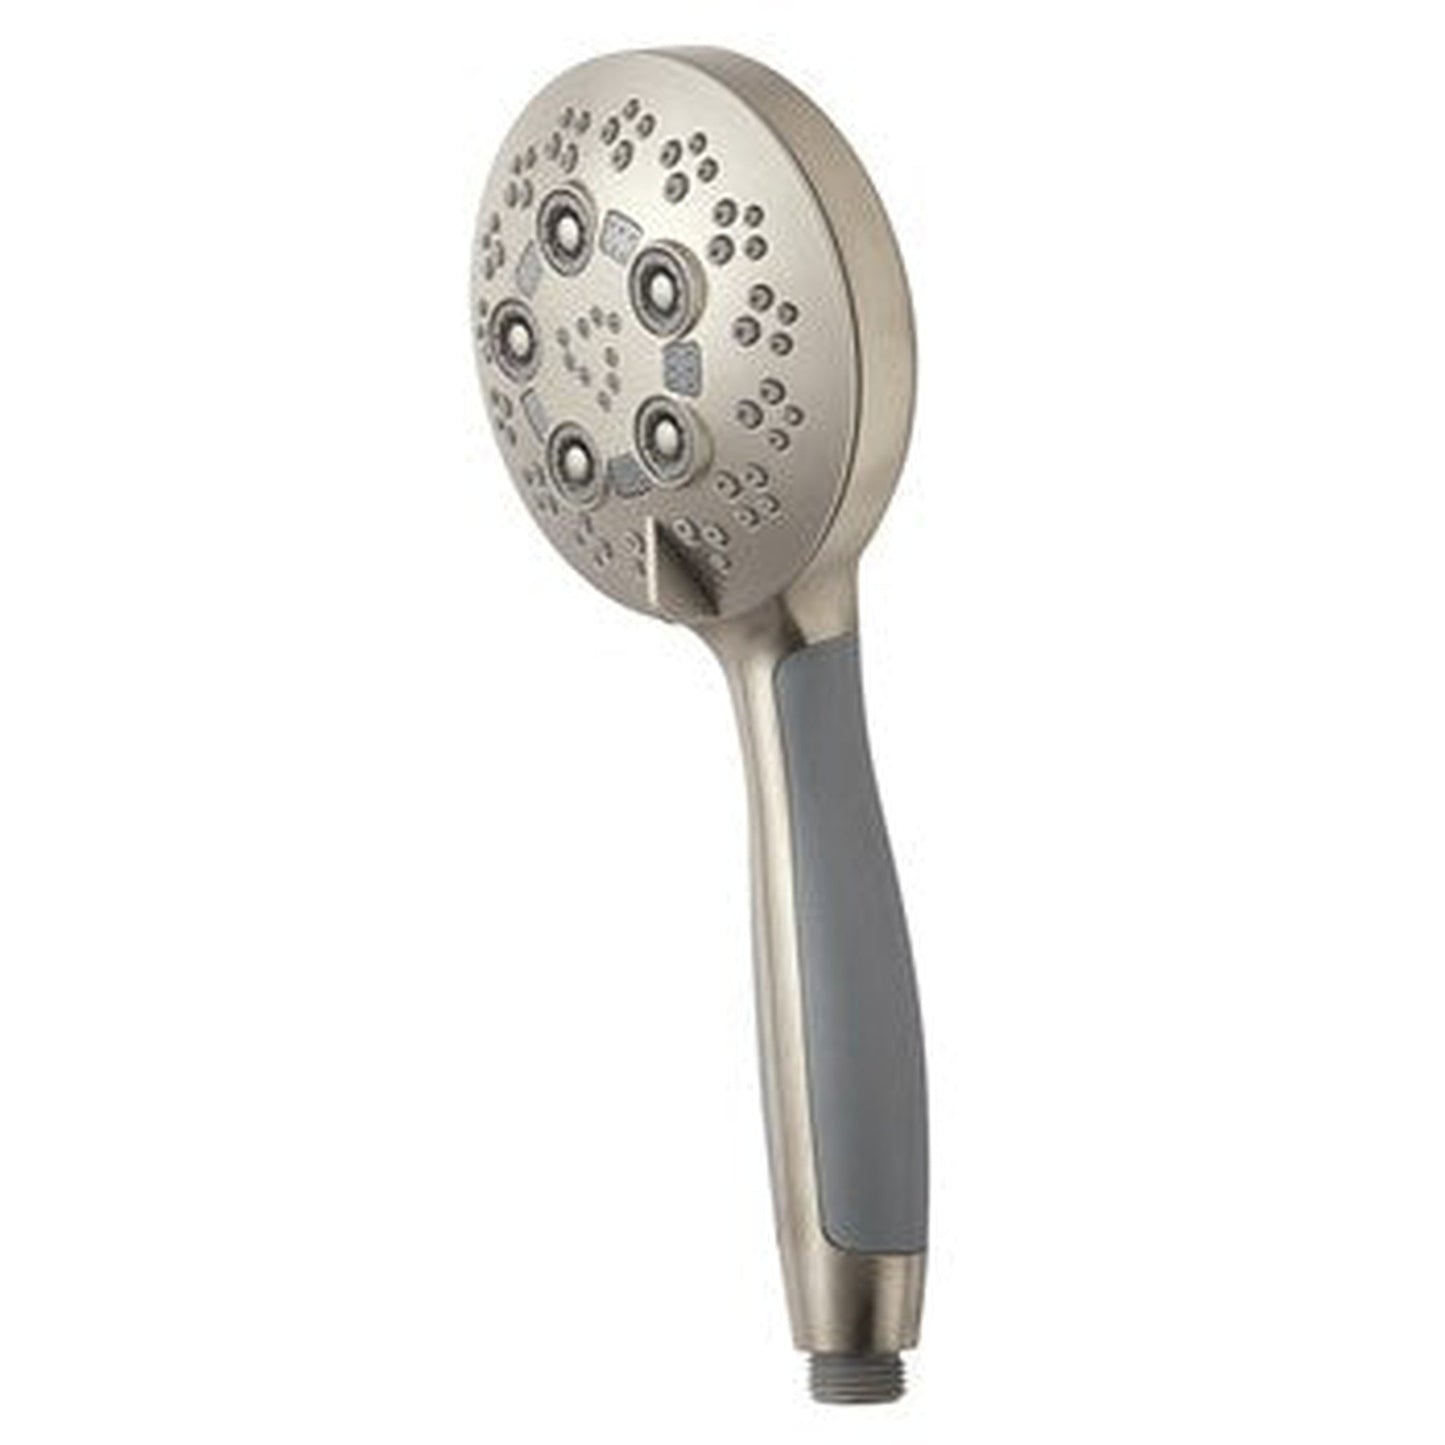 Speakman Rio 1.75 GPM 5-Spray Pattern Handheld Brushed Nickel Shower Head